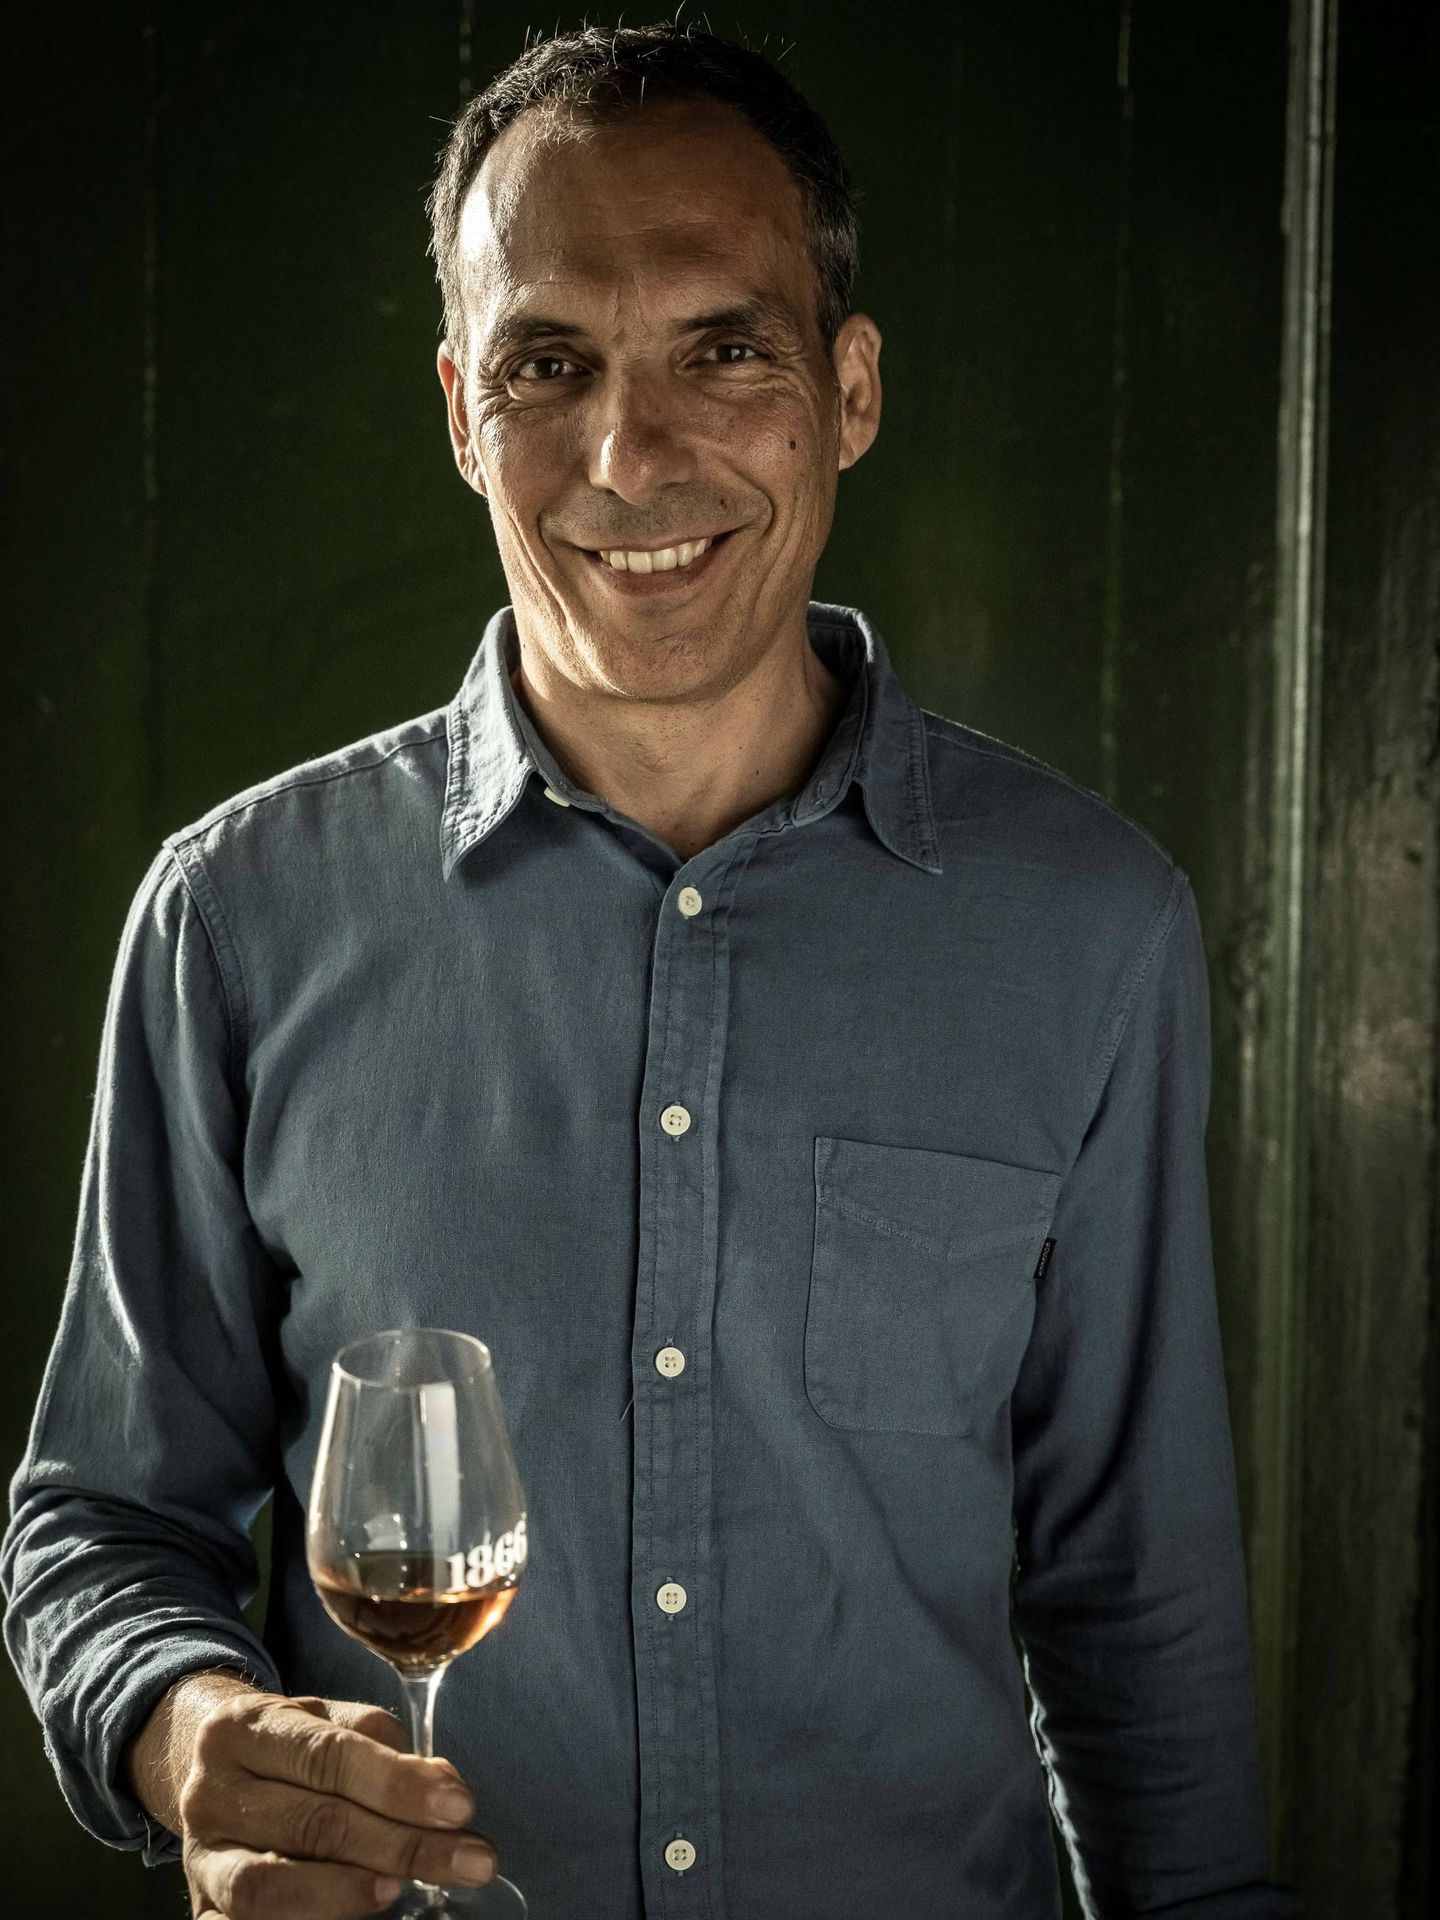 Marcos Alguacil destaca la buena calidad de los vinos que se hacen ahora en España (Foto: cedida)